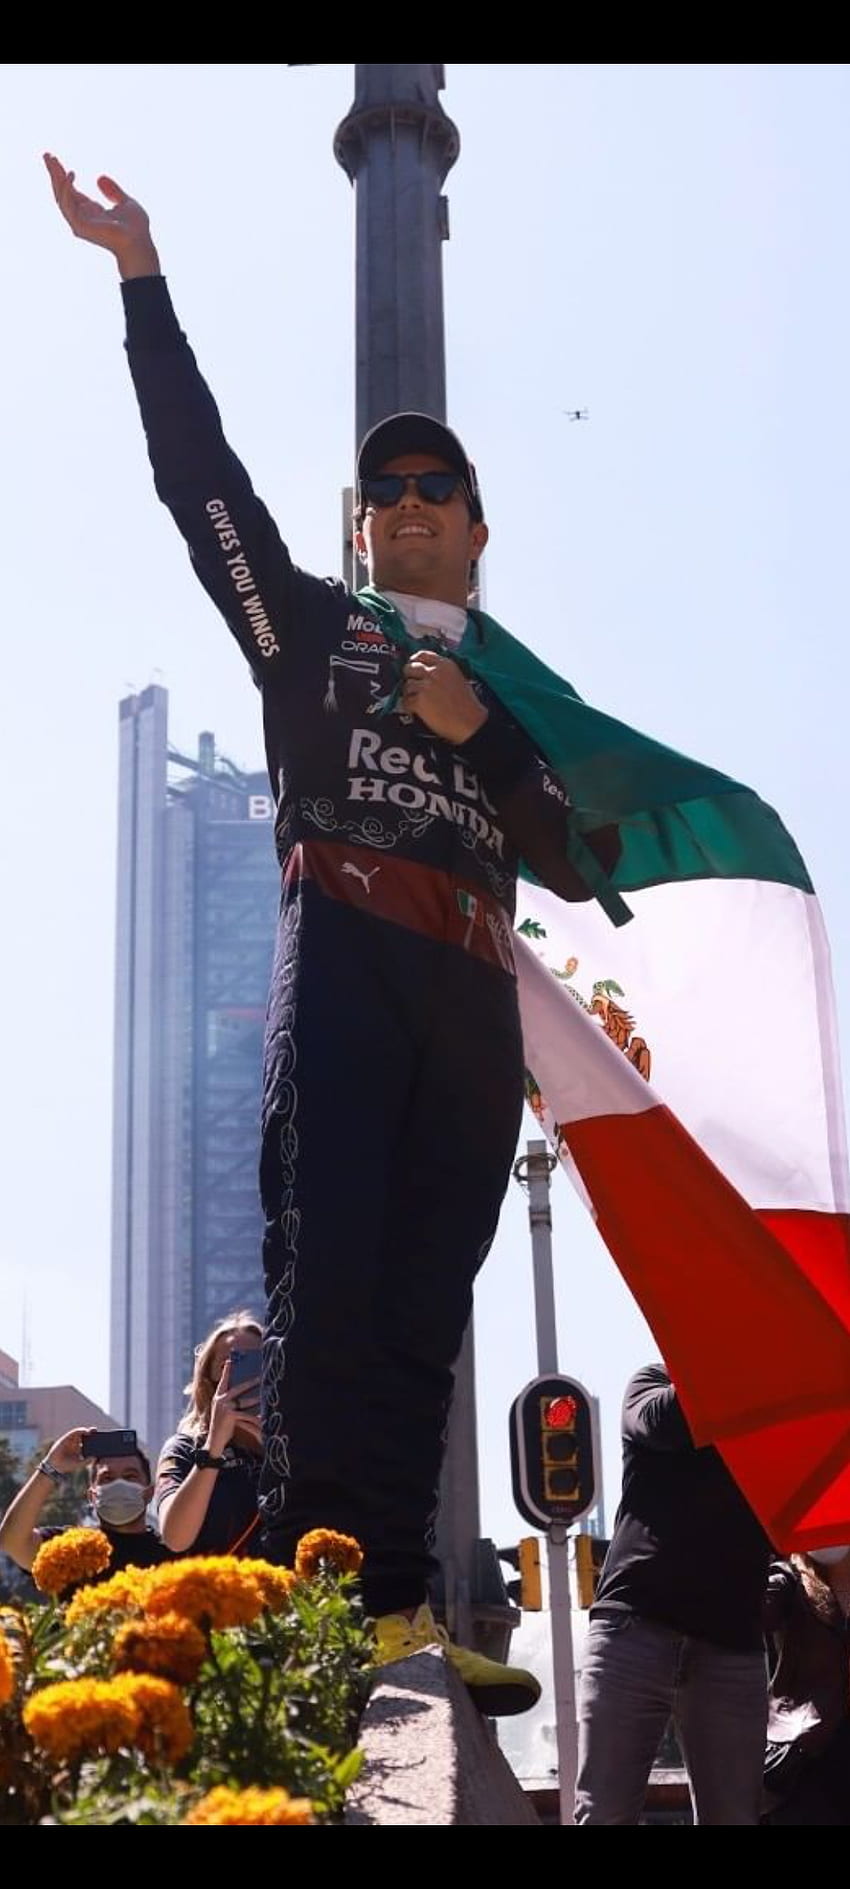 Sergio Pérez | 11, carreras de redbull, box box checo, fórmula 1, sergio perez, sp11, f1, mexicano, toro rojo, checo fondo de pantalla del teléfono